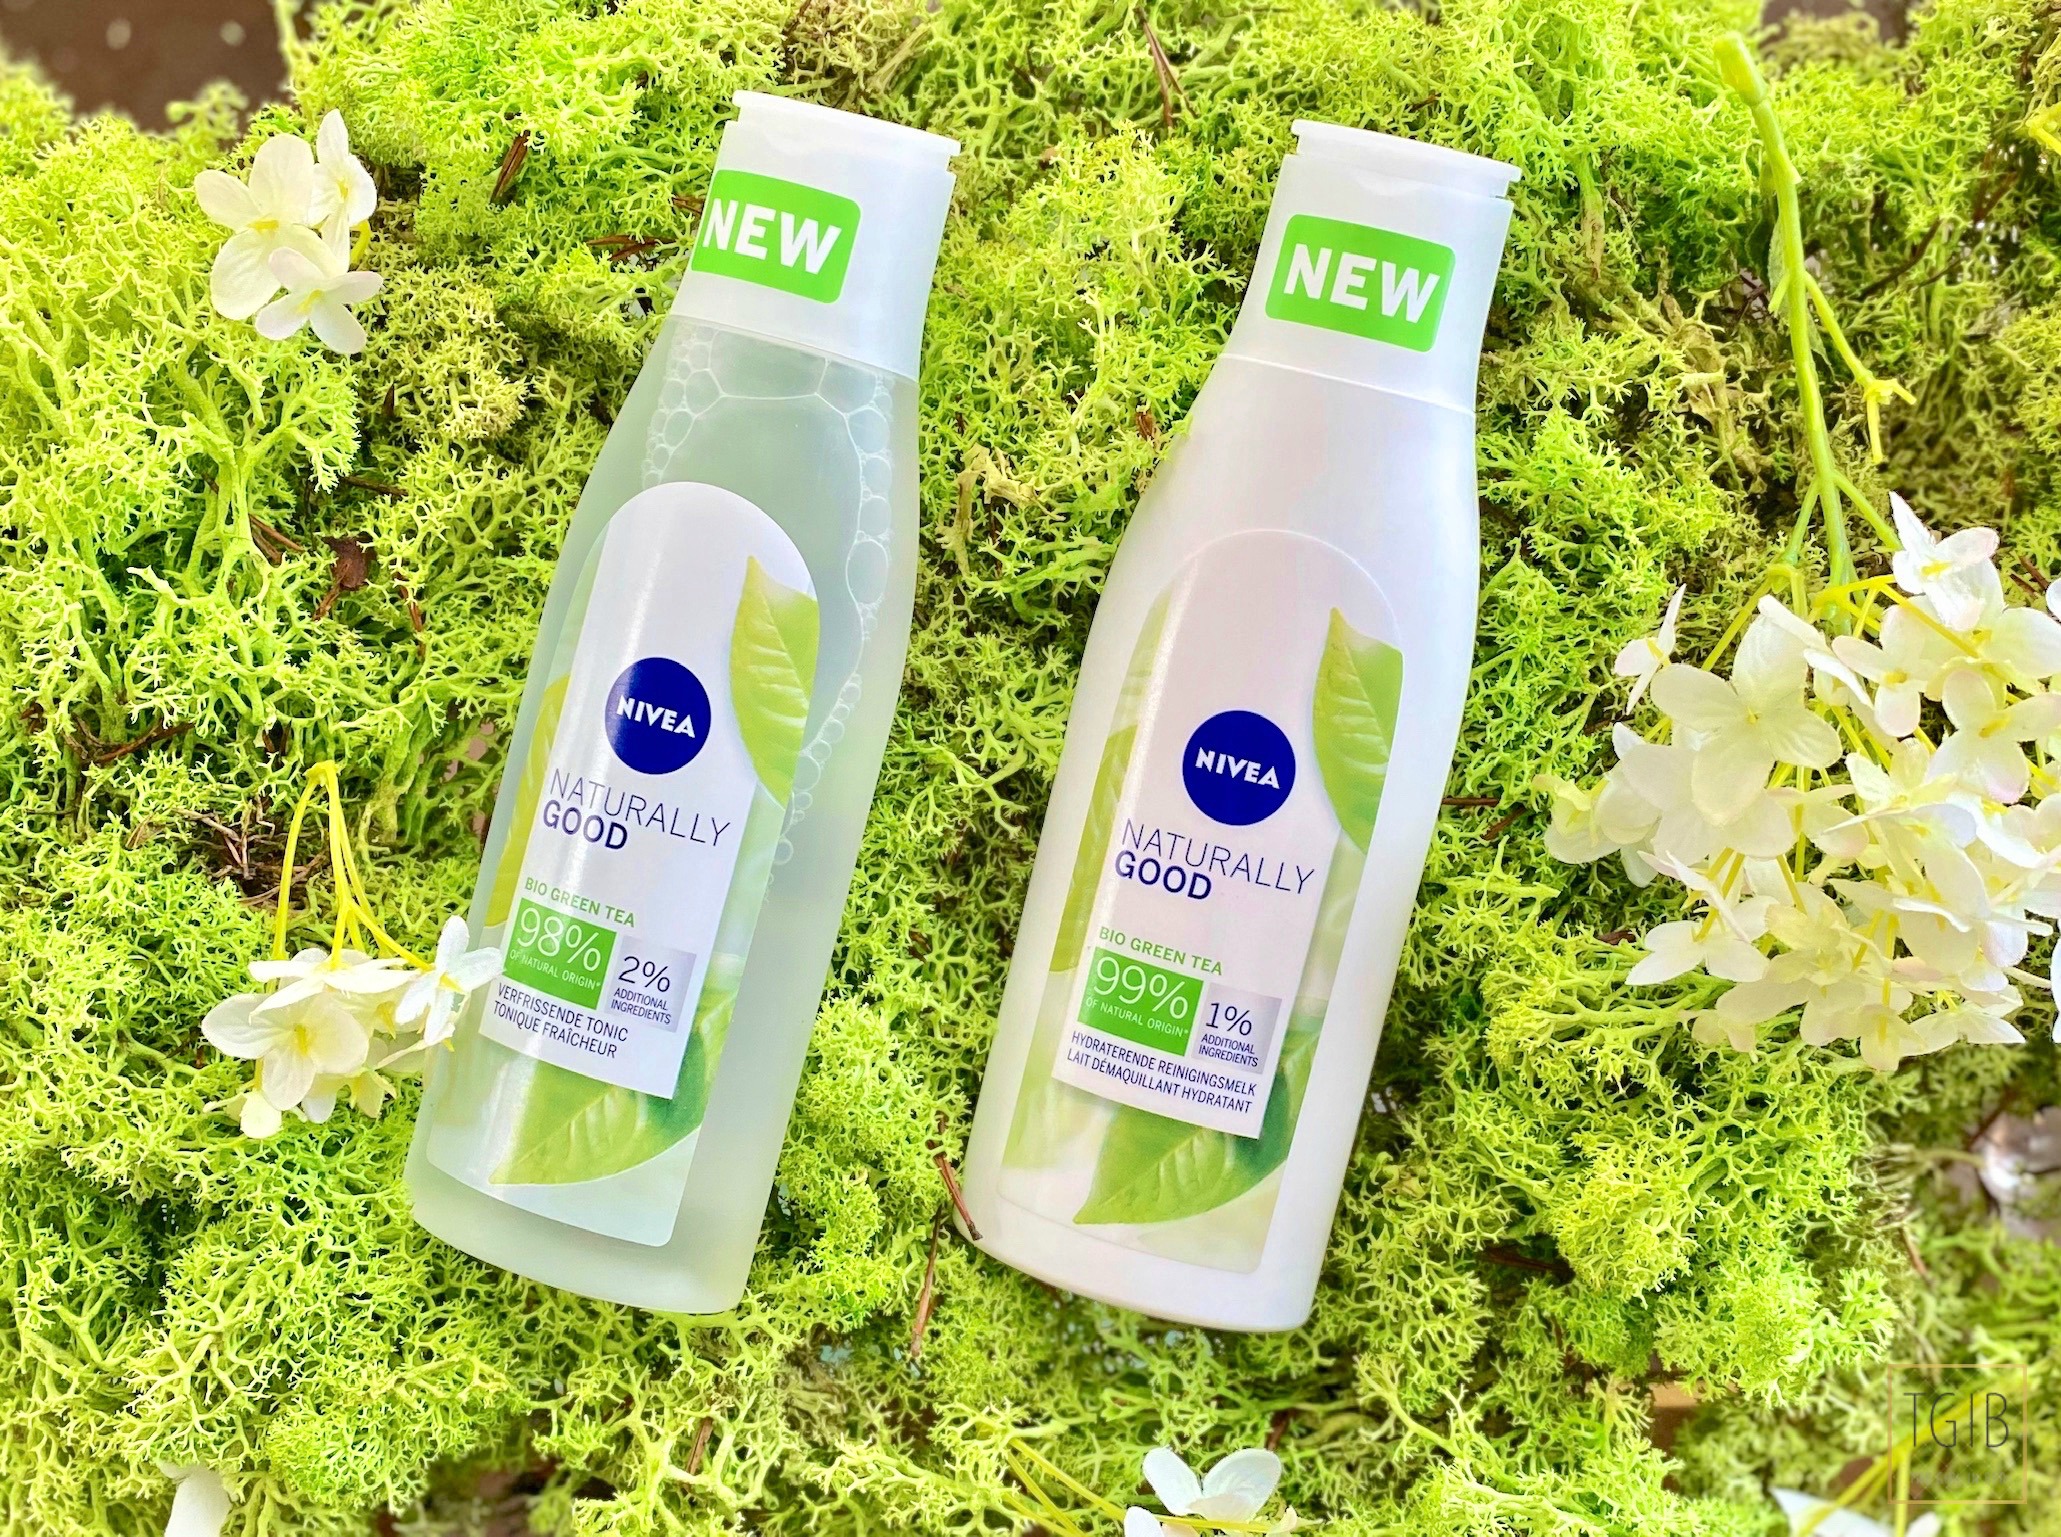 Nivea Naturally Good Review + Eerste Indruk-5 melk tonic